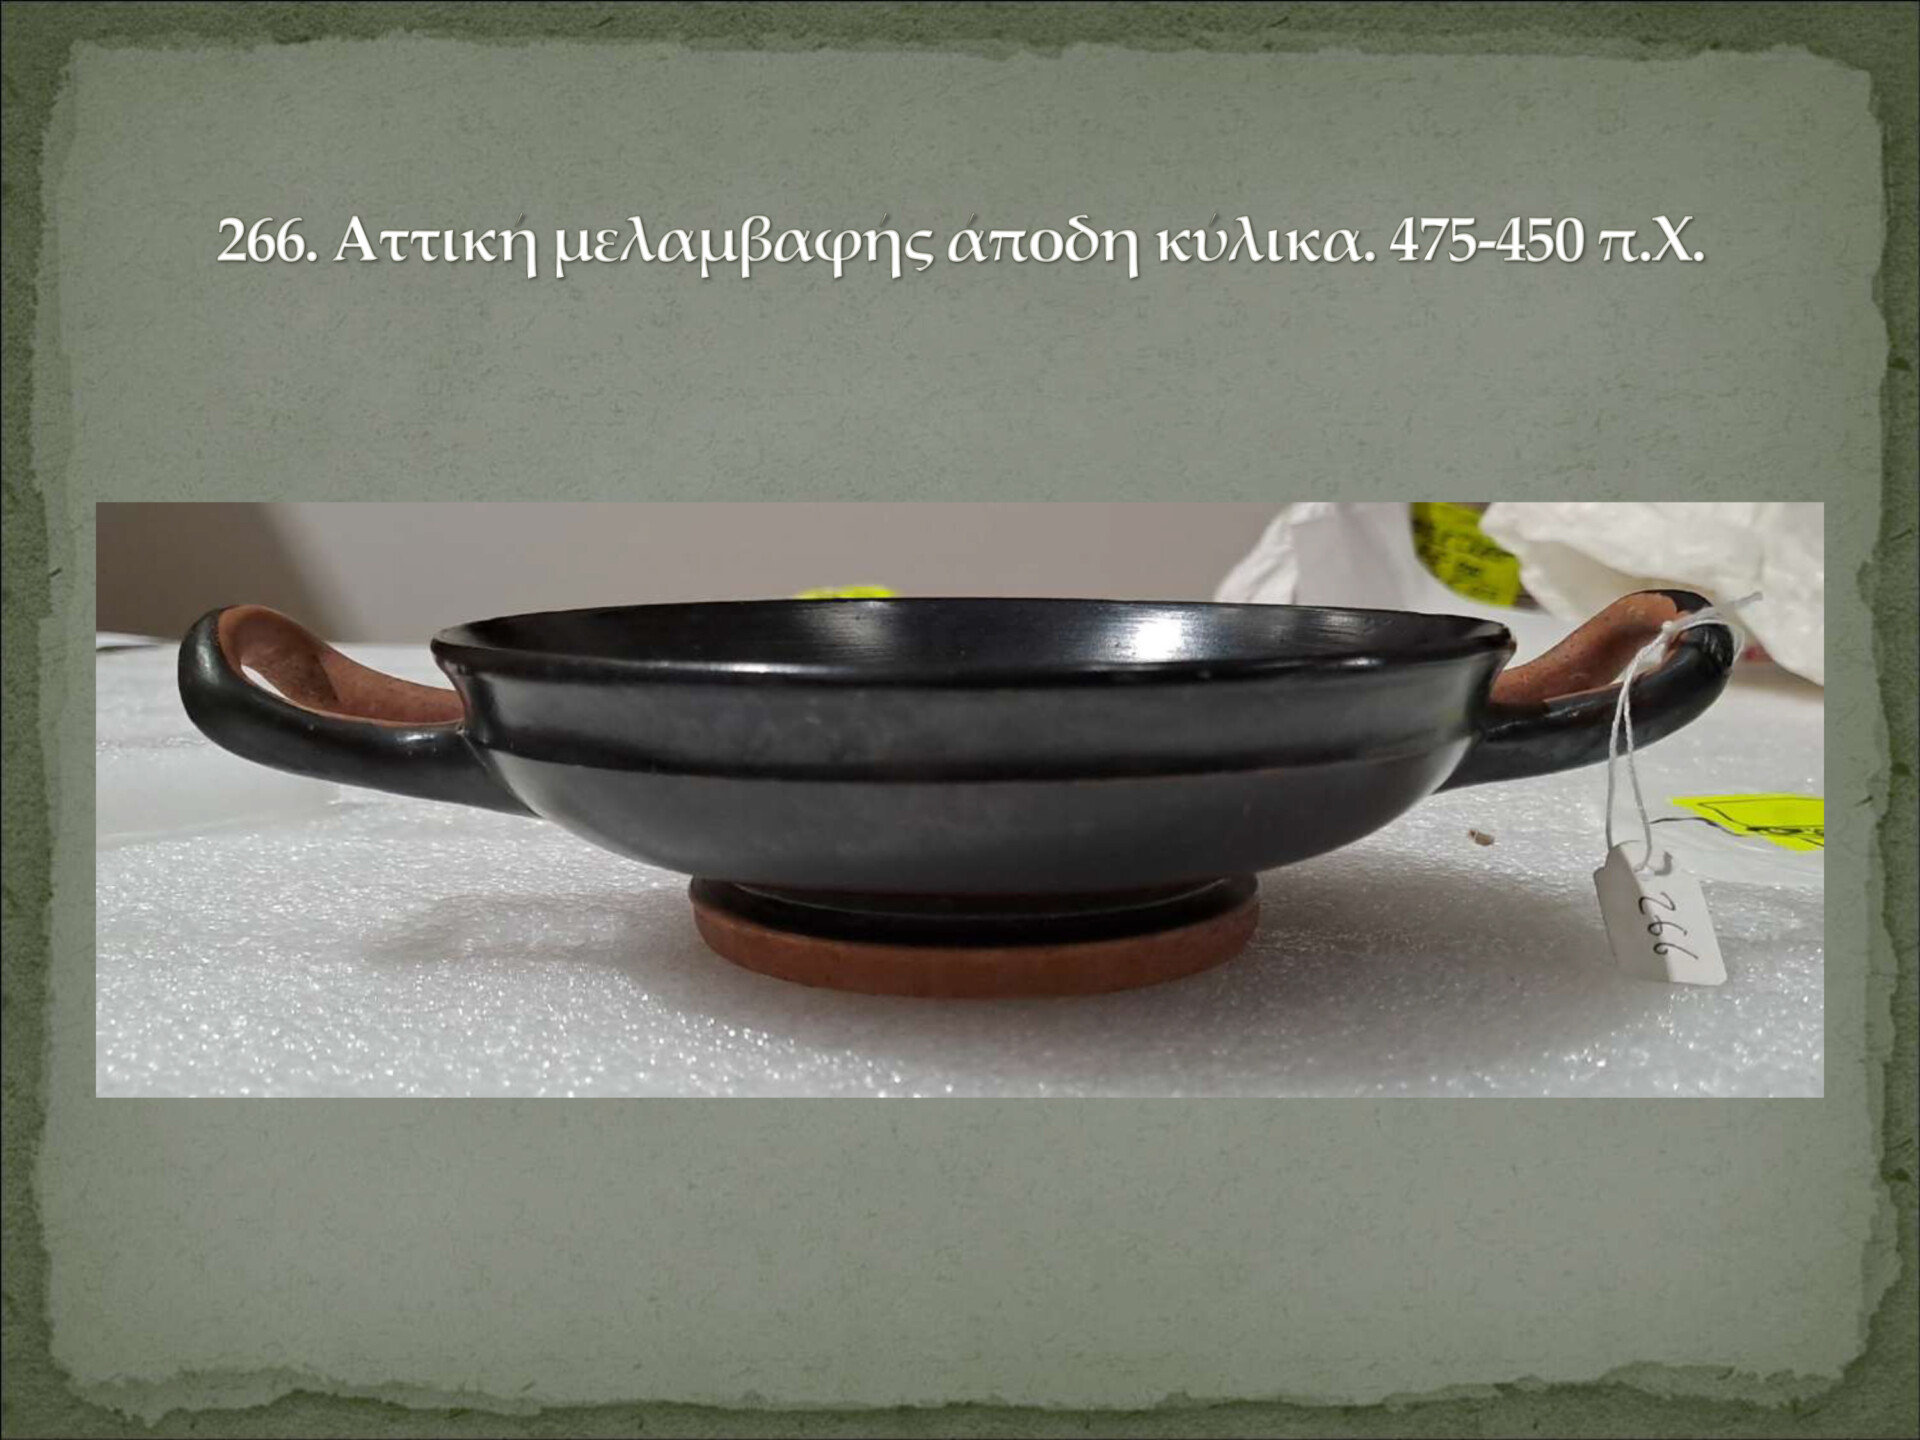 Αρχαία αντικείμενα επαναπατρίστηκαν στην Ελλάδα © Υπουργείο Πολιτισμού